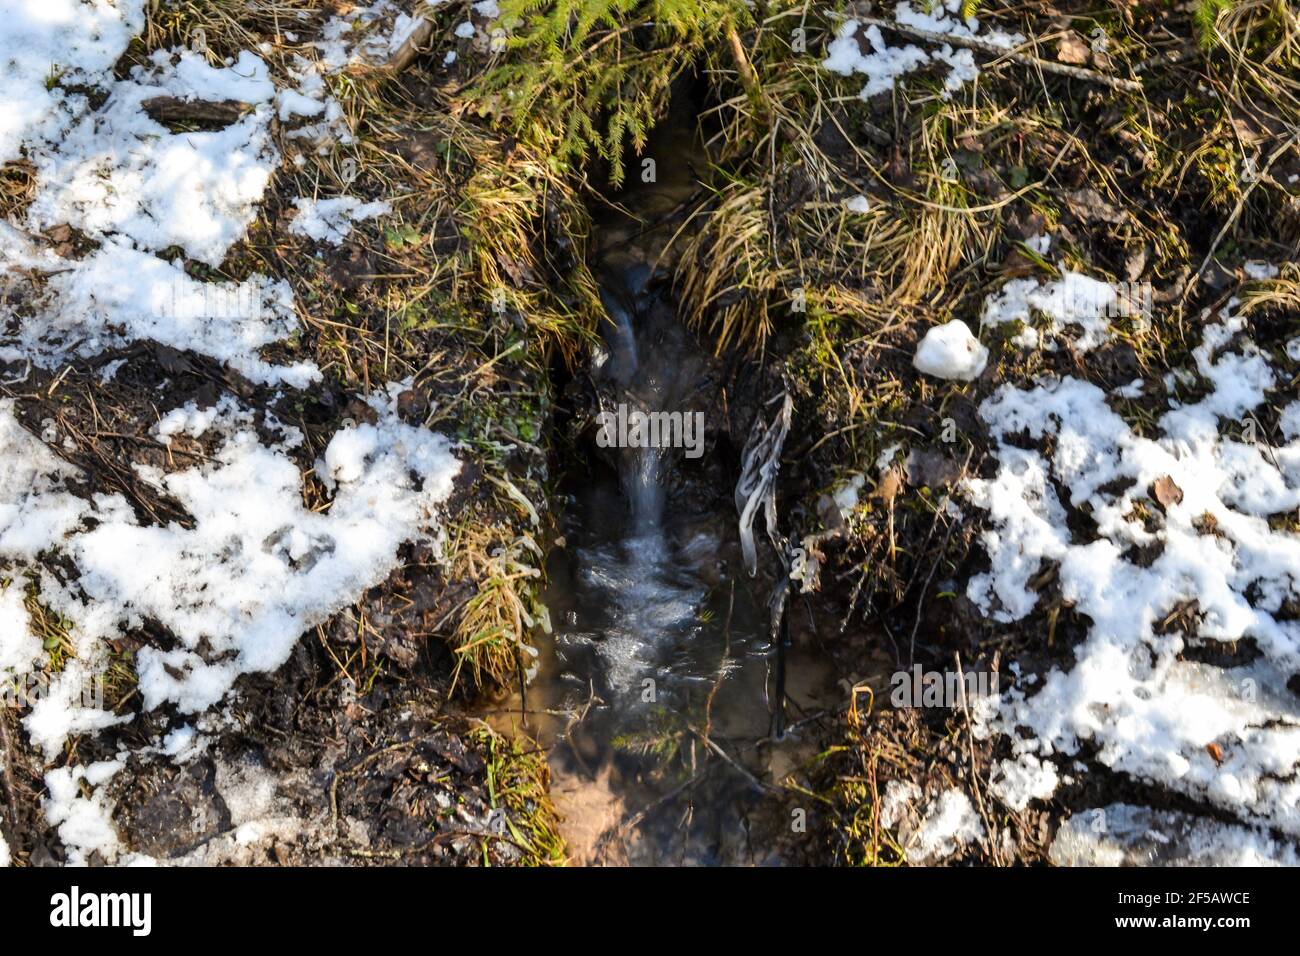 Kleine Quelle im Wald in einem moosigen Ort mit geschmolzenem Schnee und Moos herum. Nahaufnahme Makrofotografie Stockfoto